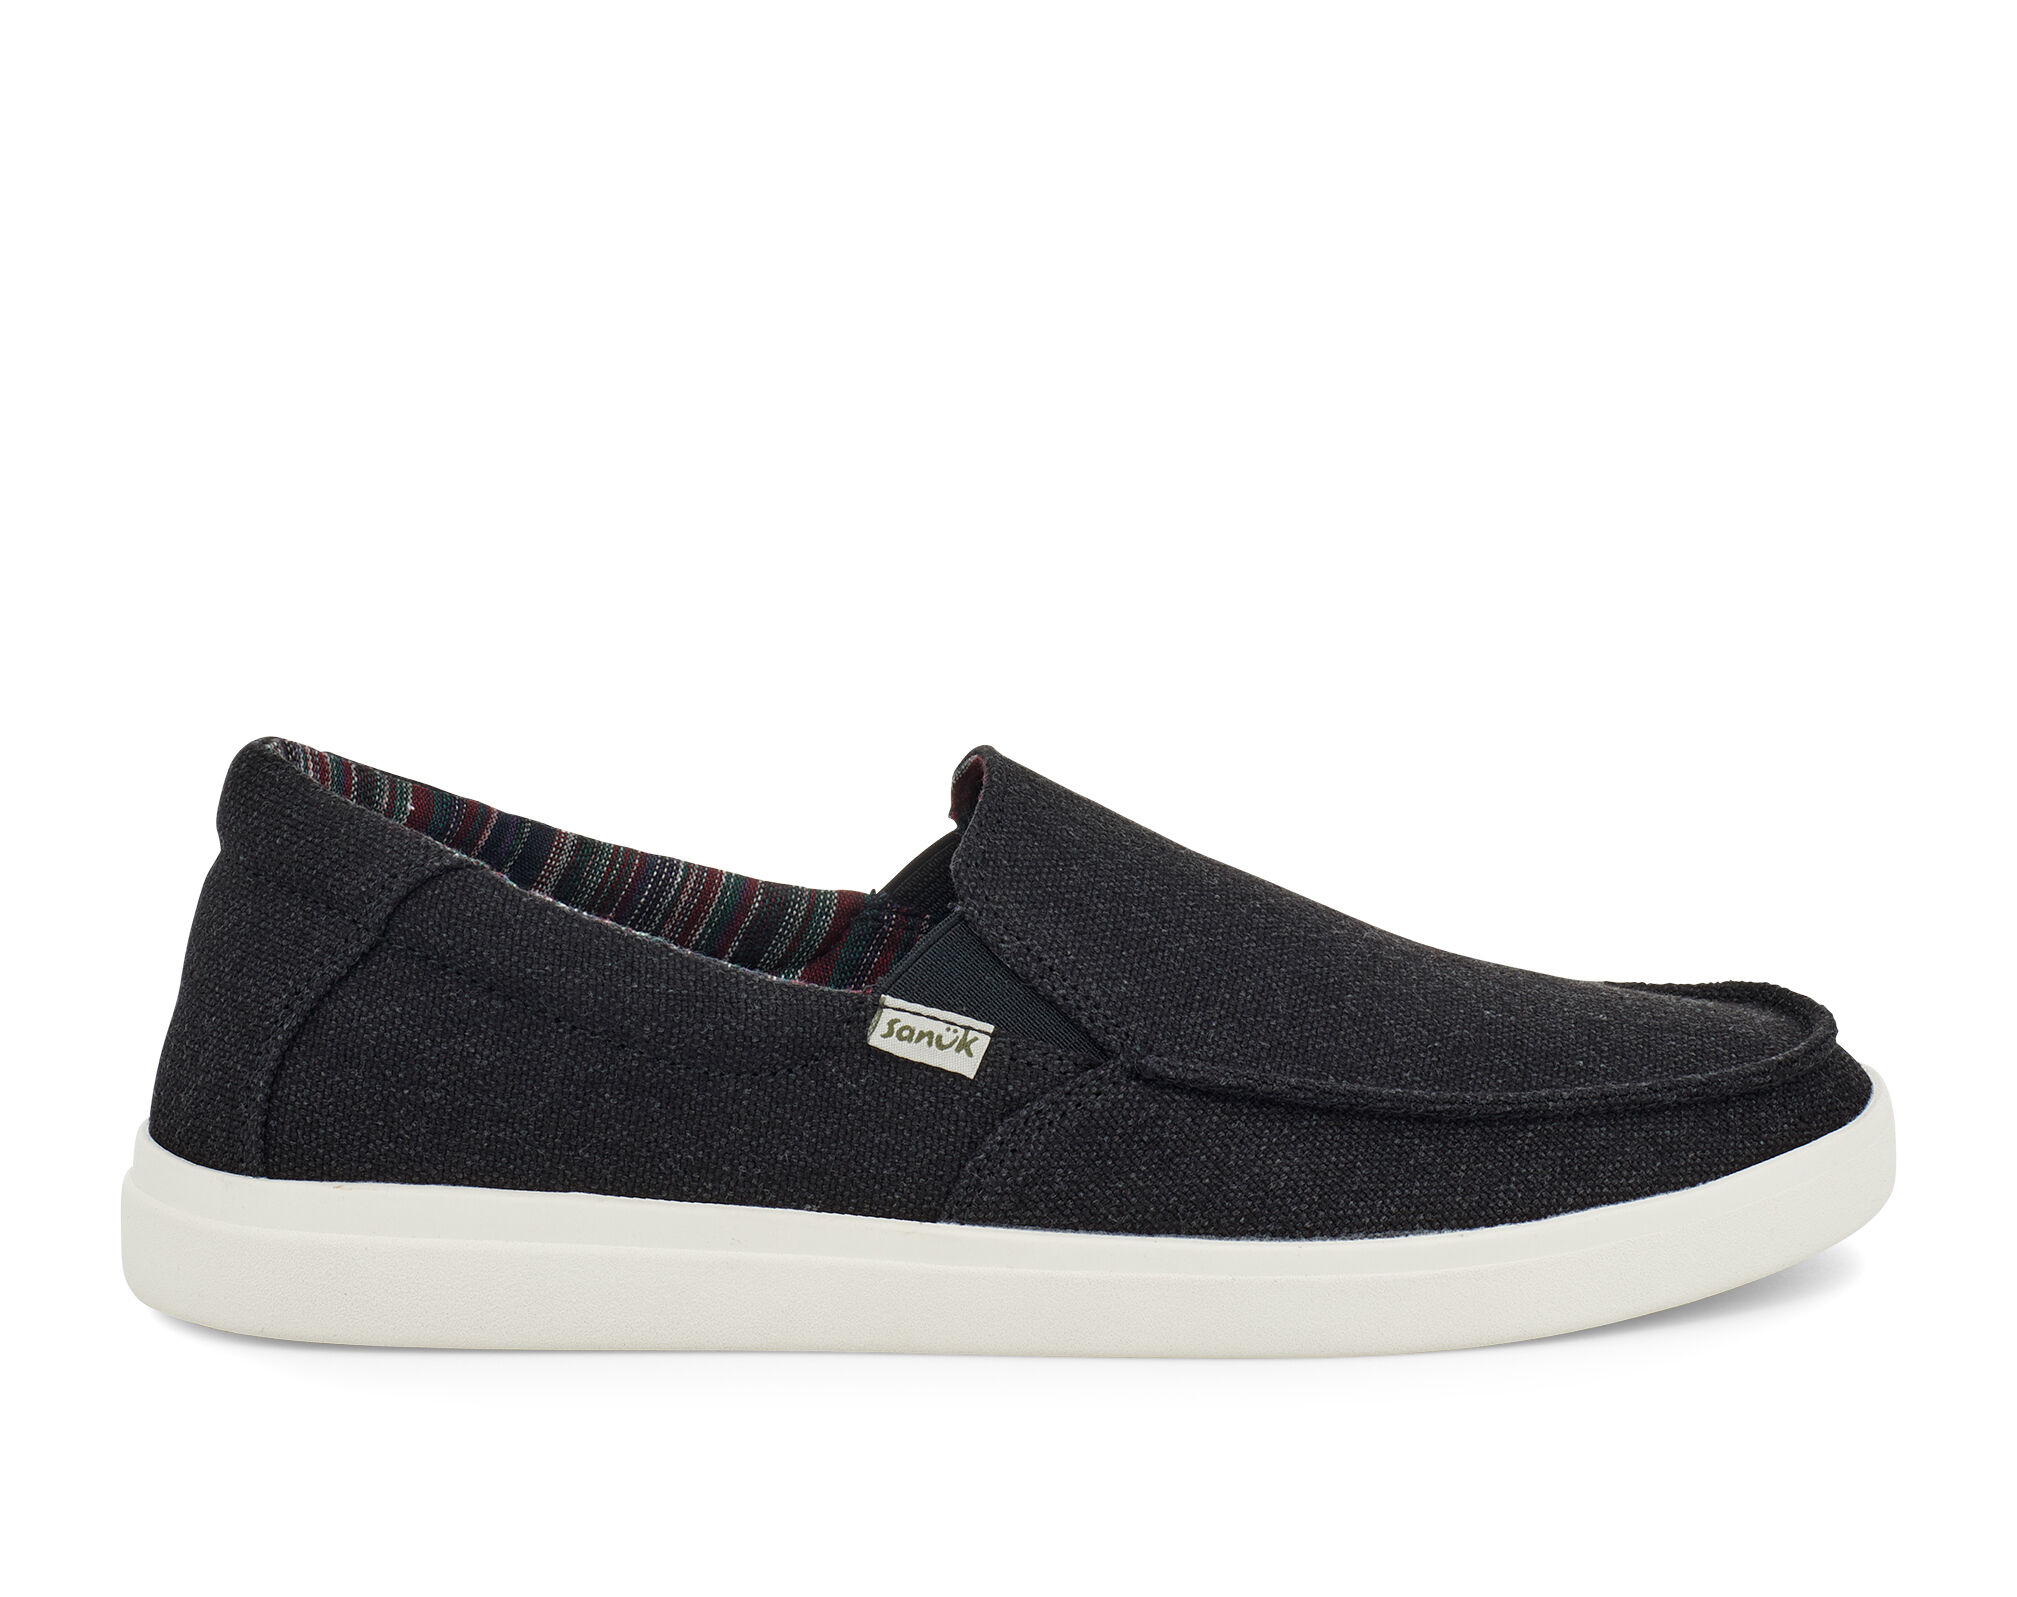 Sideline 2 Hemp Slip-on Sneaker | Sanuk®